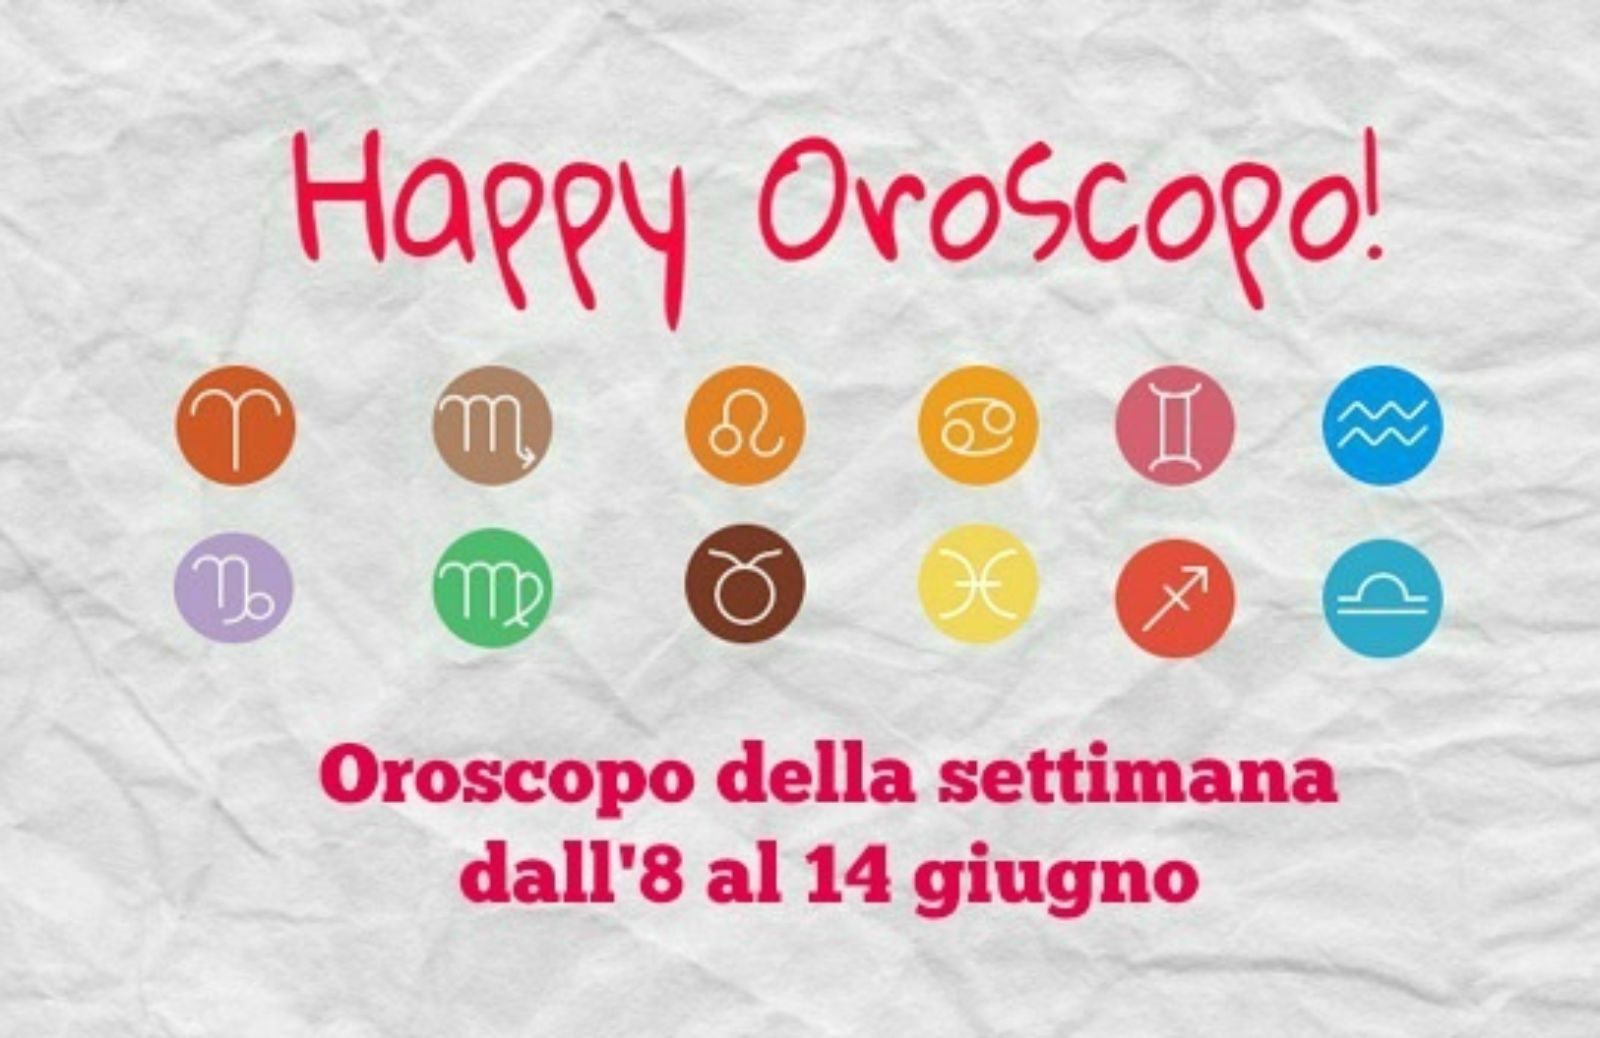 Happy Oroscopo della settimana: cosa dicono le stelle dall' 8 al 14 giugno